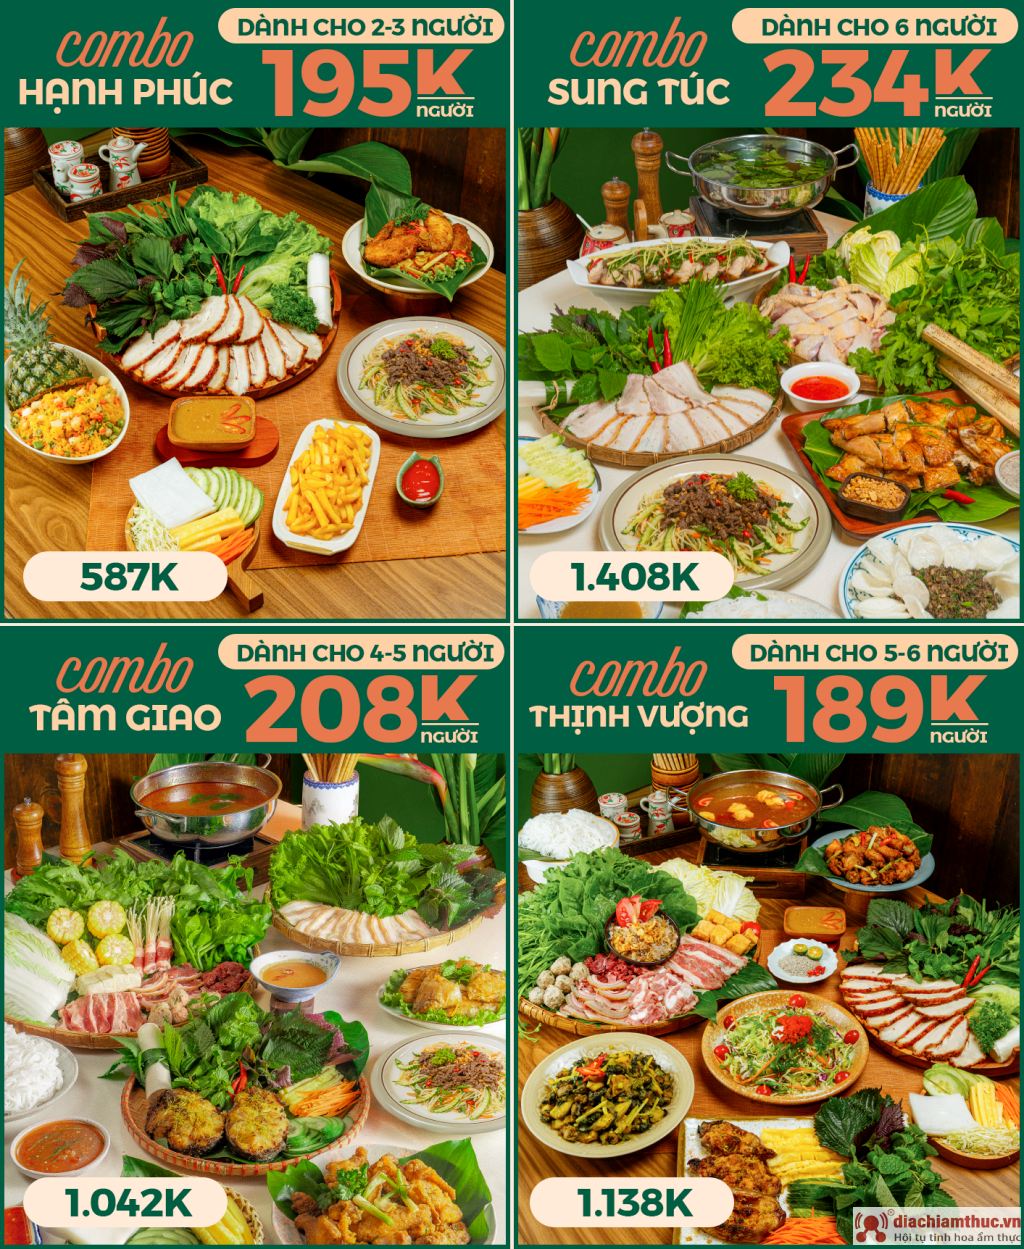 Combo món ngon đa dạng của nhà hàng bánh tráng An Vũ